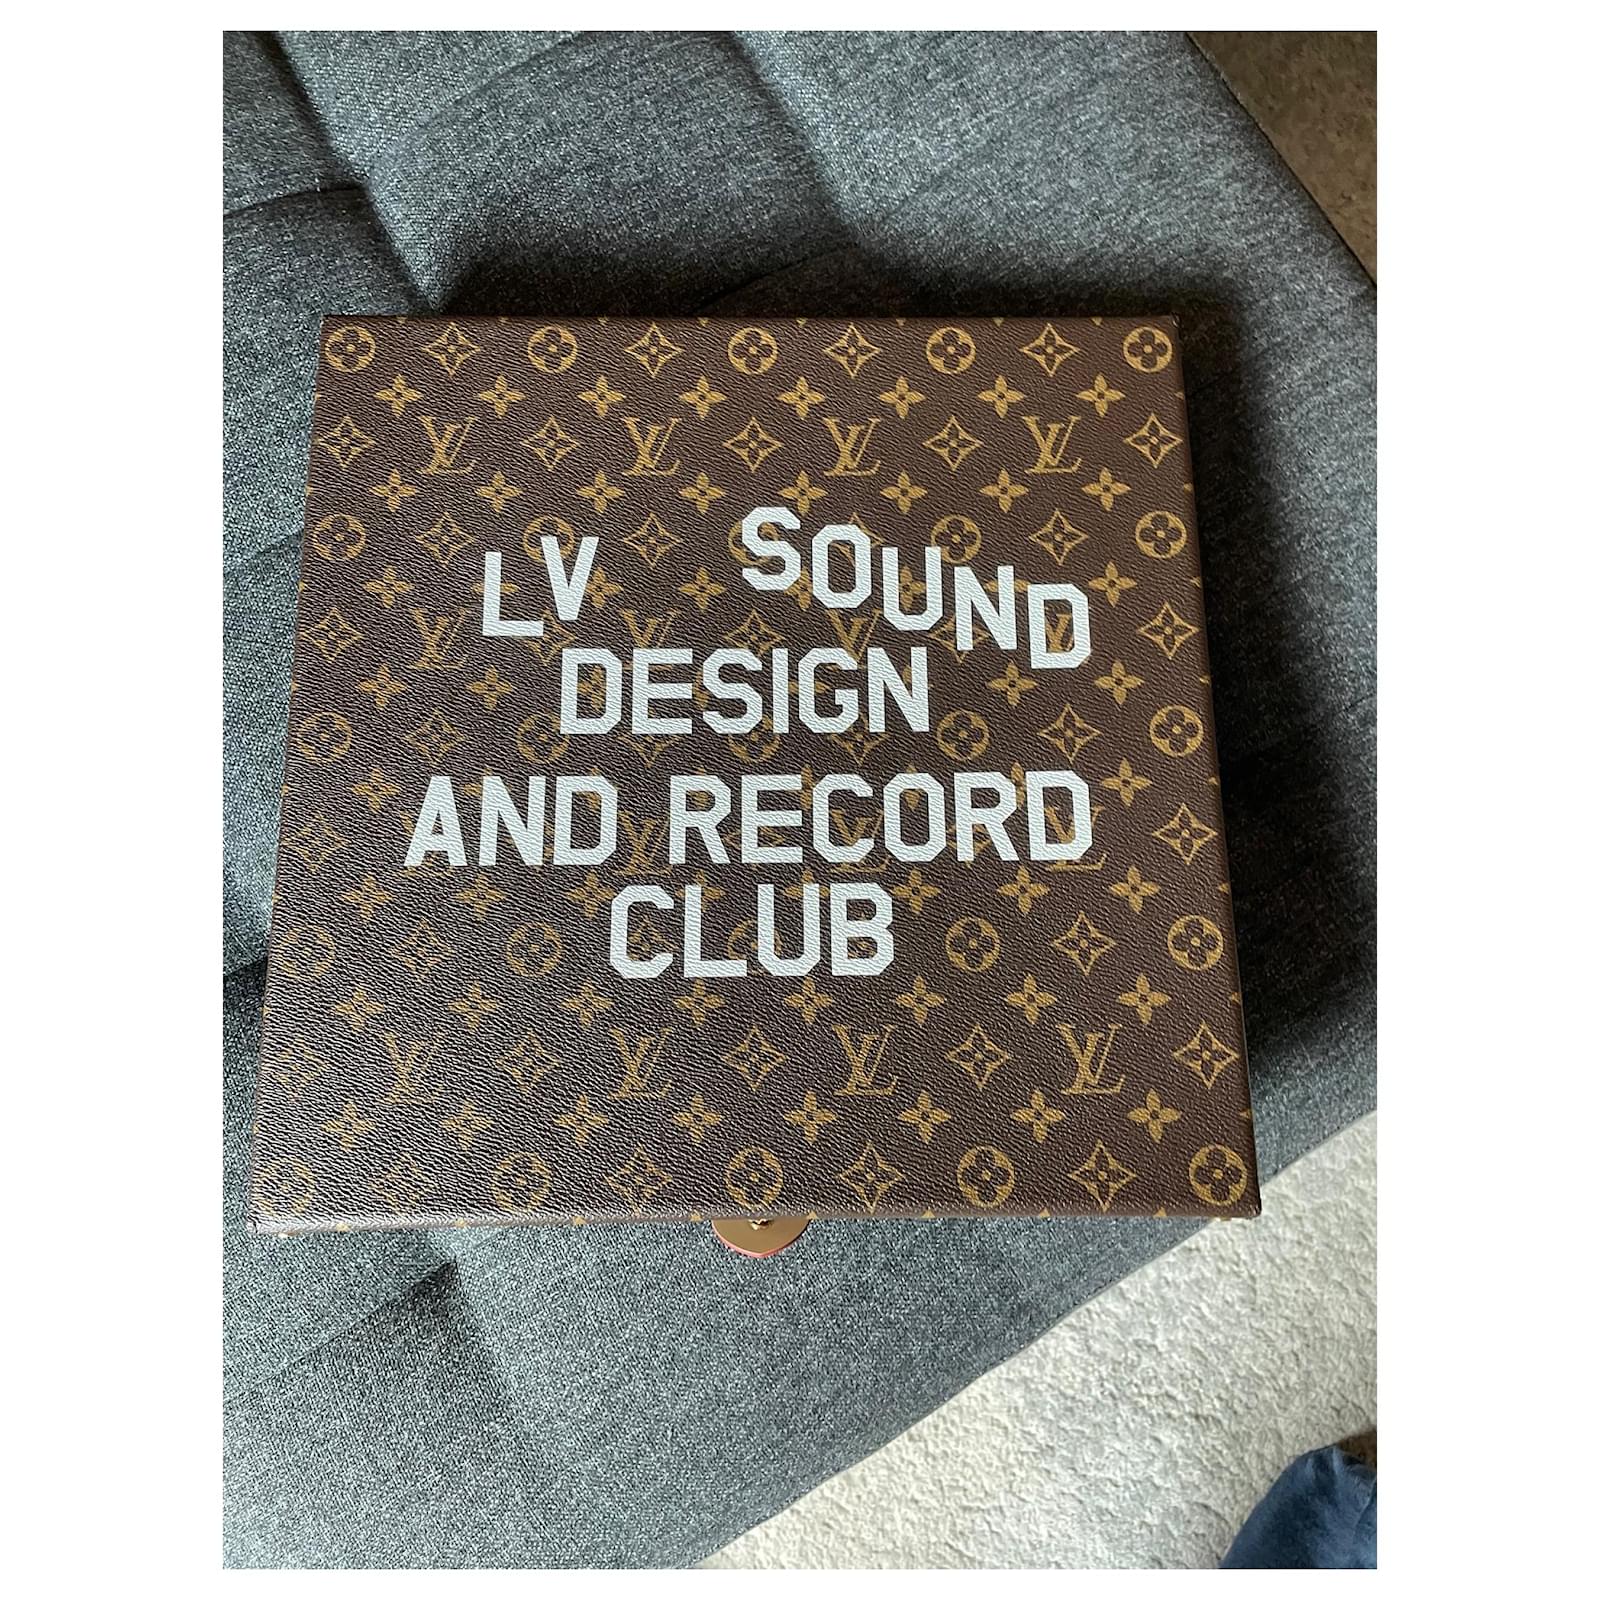 Louis Vuitton Vinyl 